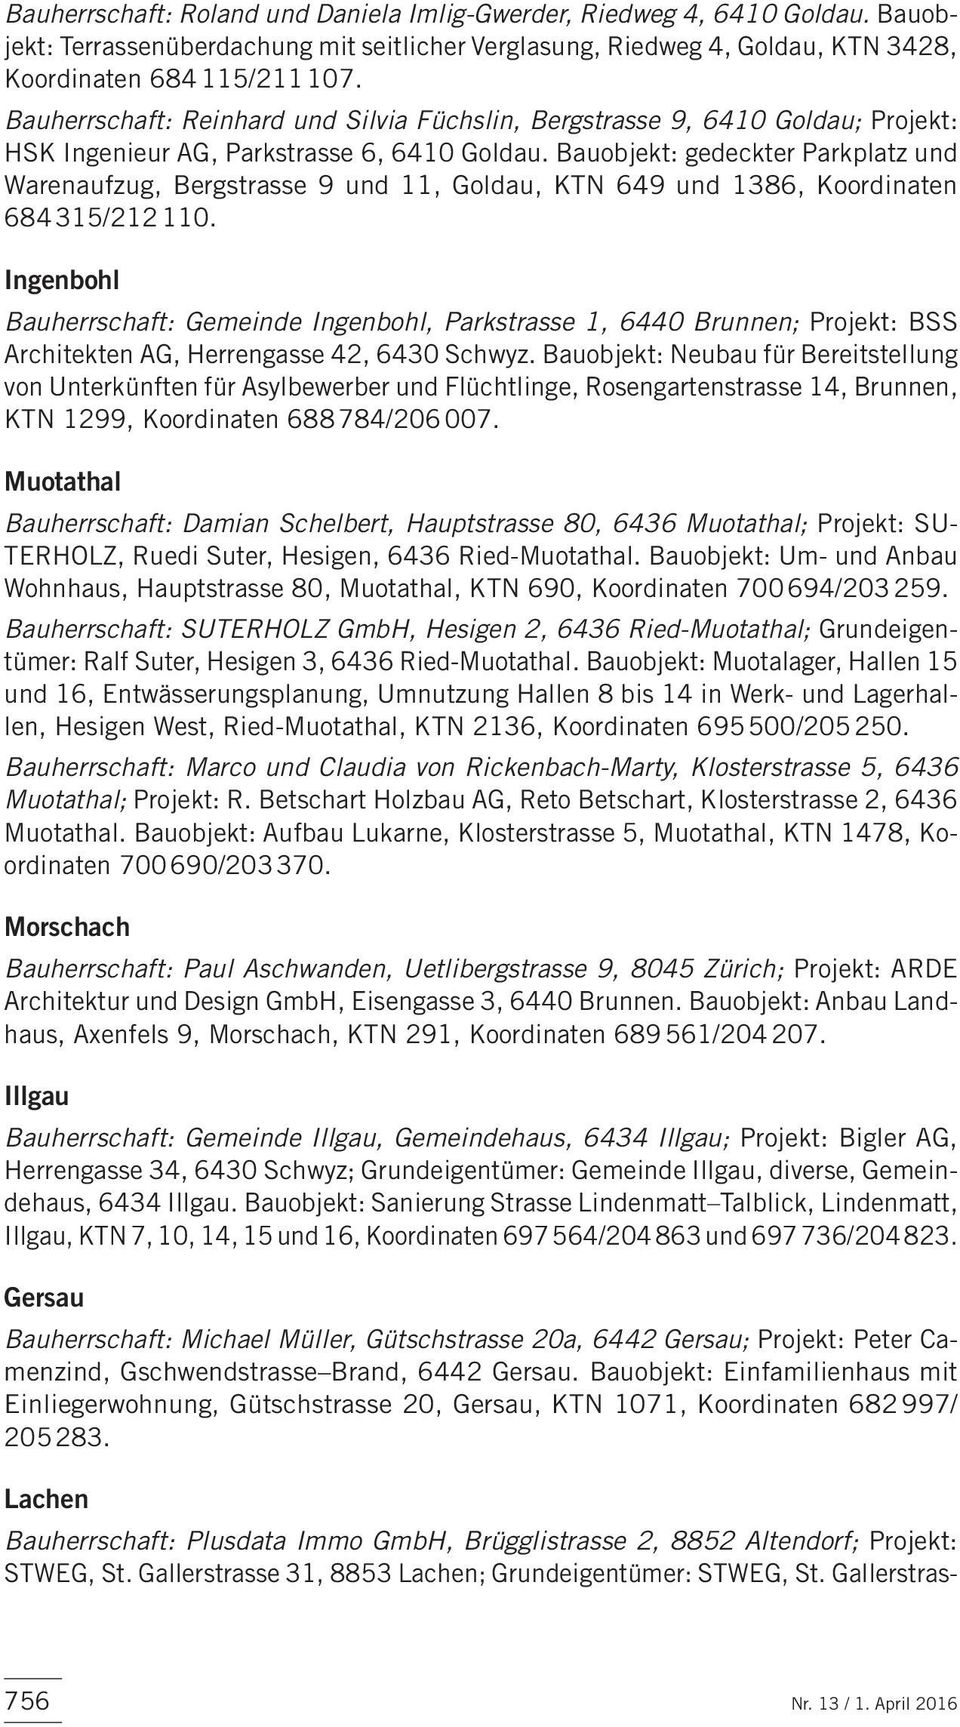 Bauobjekt: gedeckter Parkplatz und Warenaufzug, Bergstras se 9 und 11, Goldau, KTN 649 und 1386, Koordinaten 684 315/212 110.